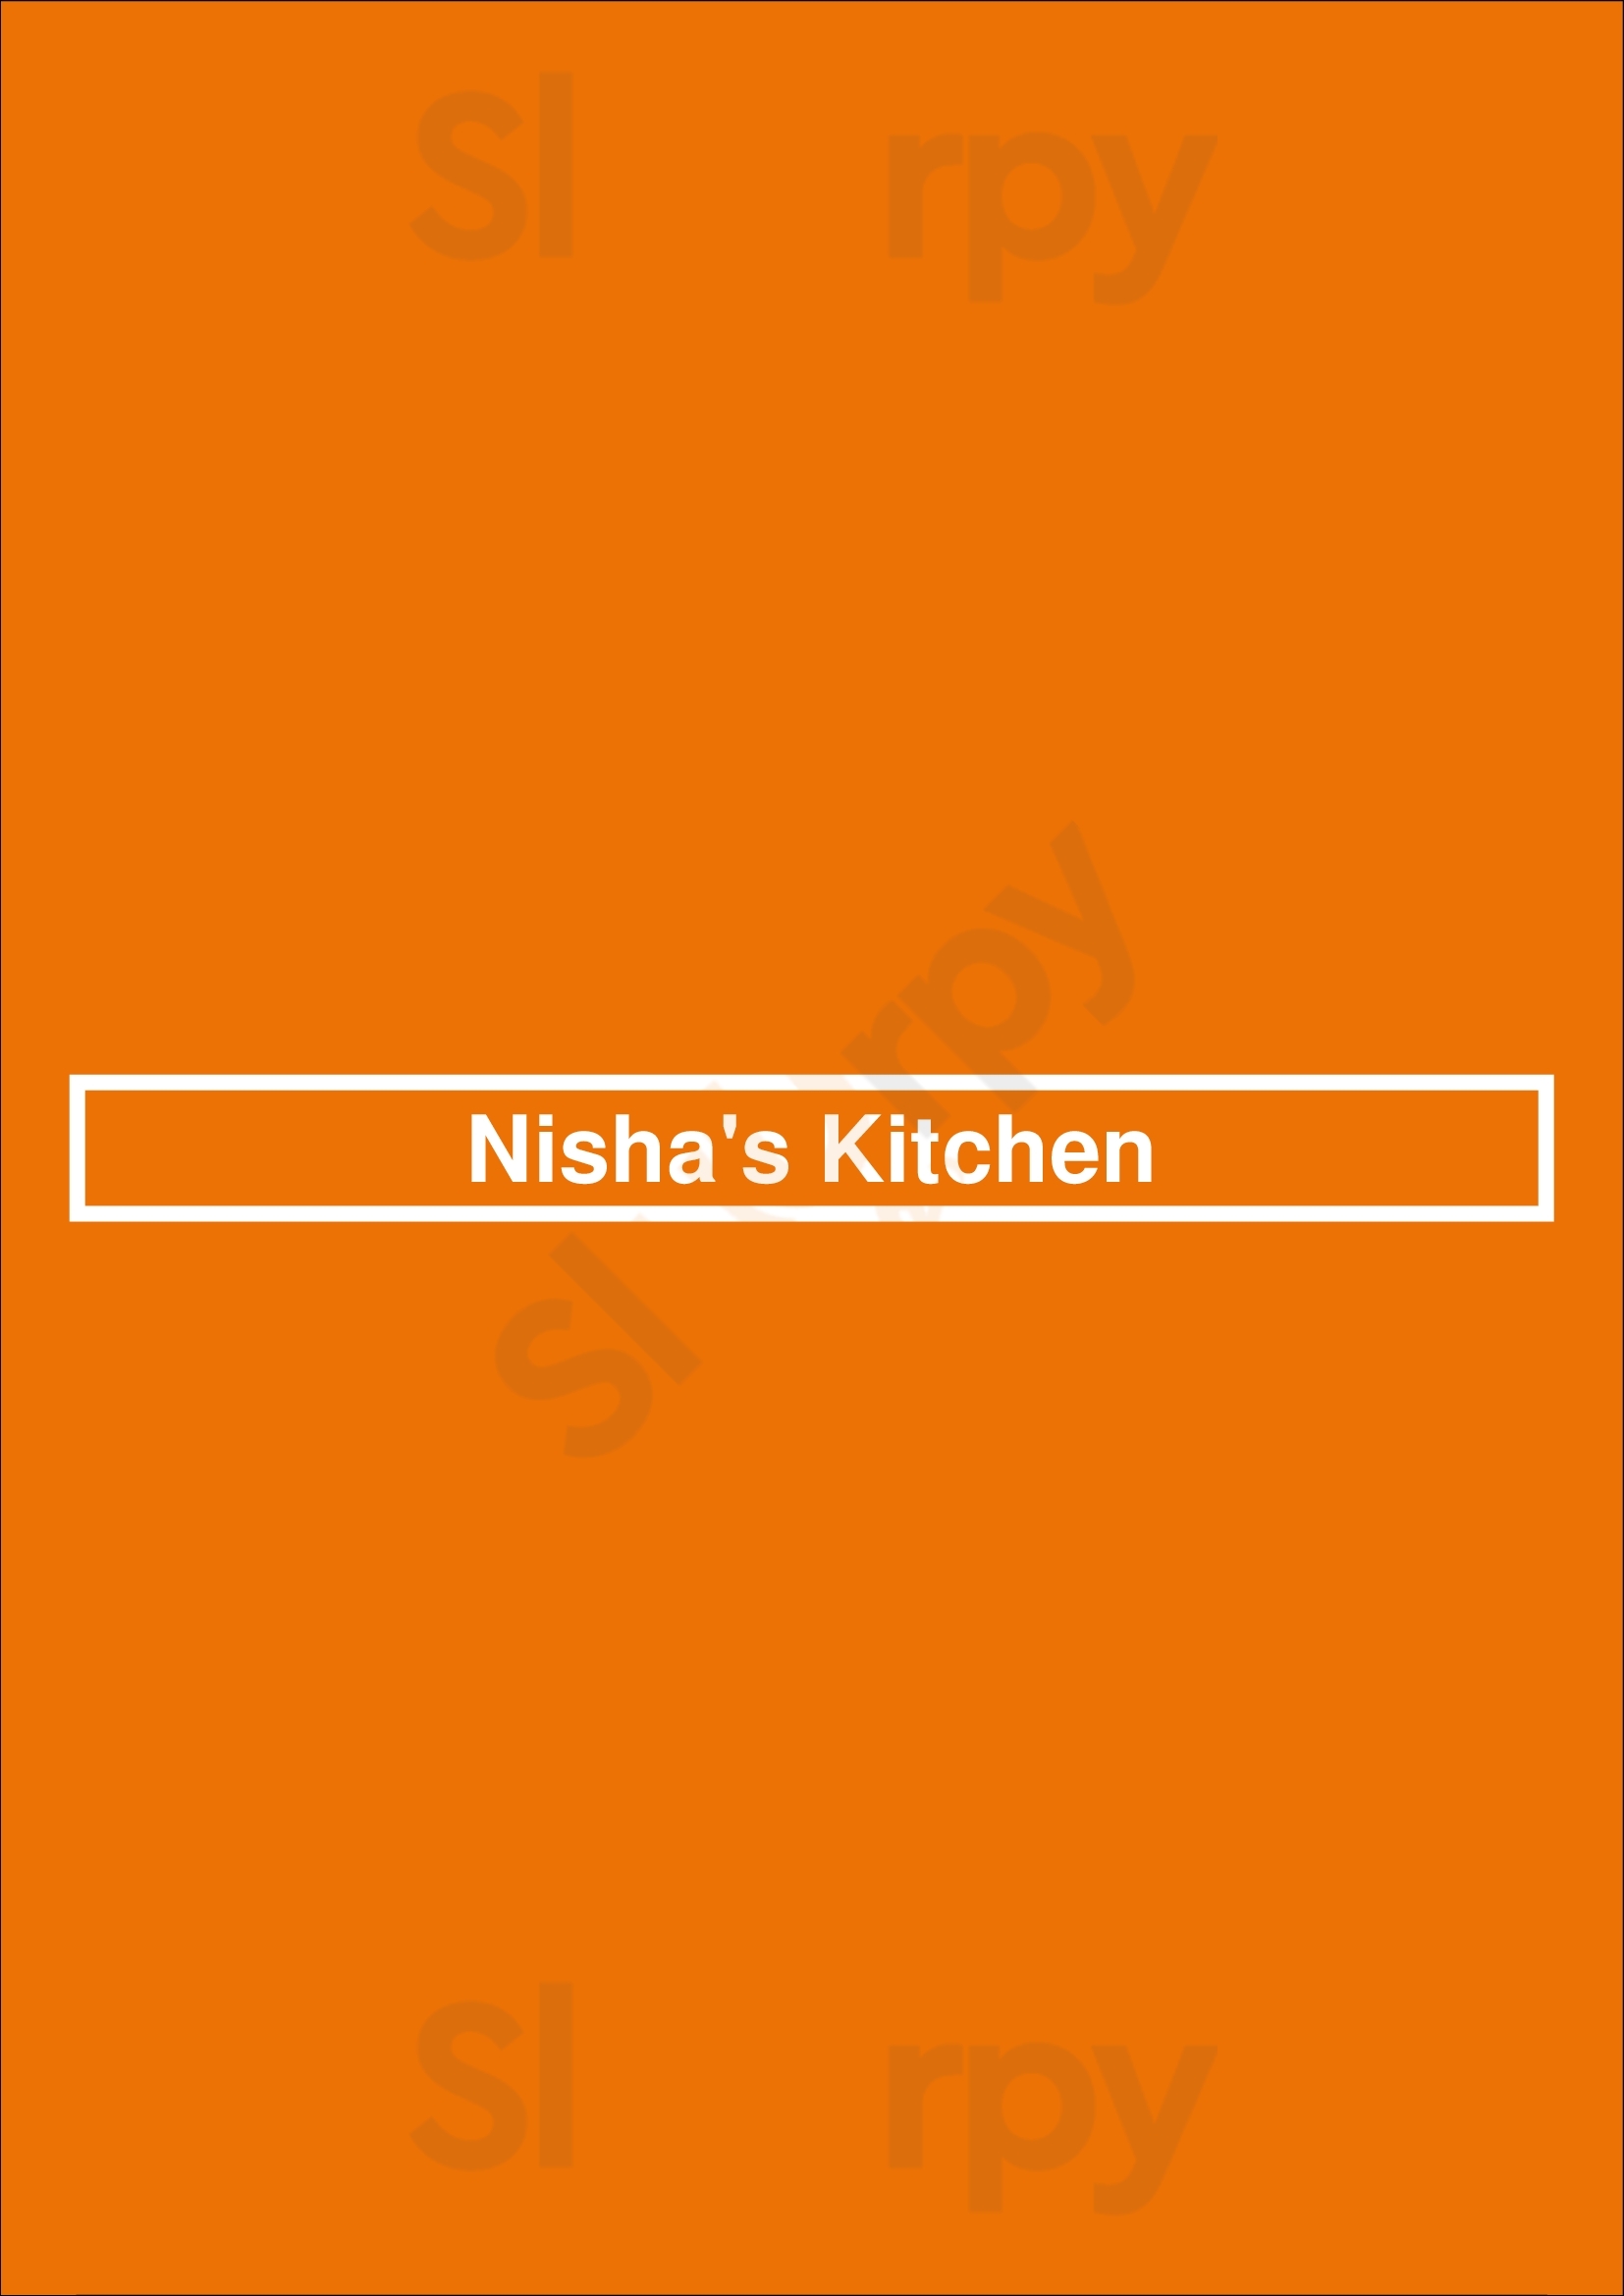 Nisha's Kitchen Kitchener Menu - 1